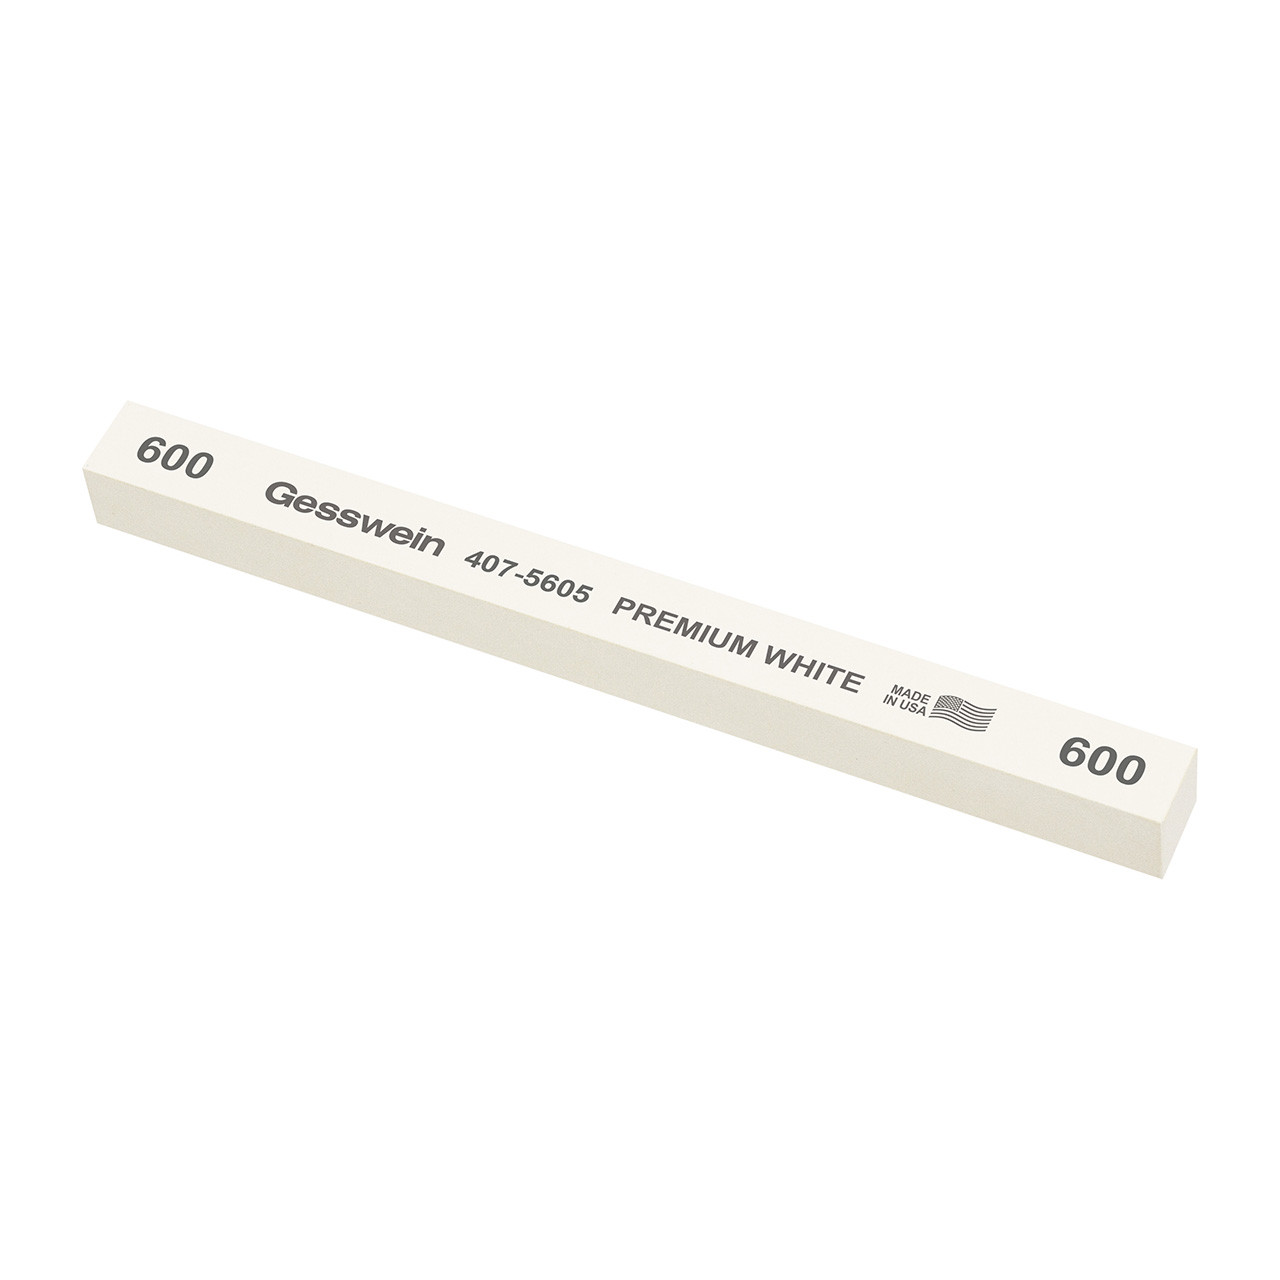 Gesswein® Premium White Stones - 1/2" x 1/2" x 6", 600 Grit  (Pkg. of 6)